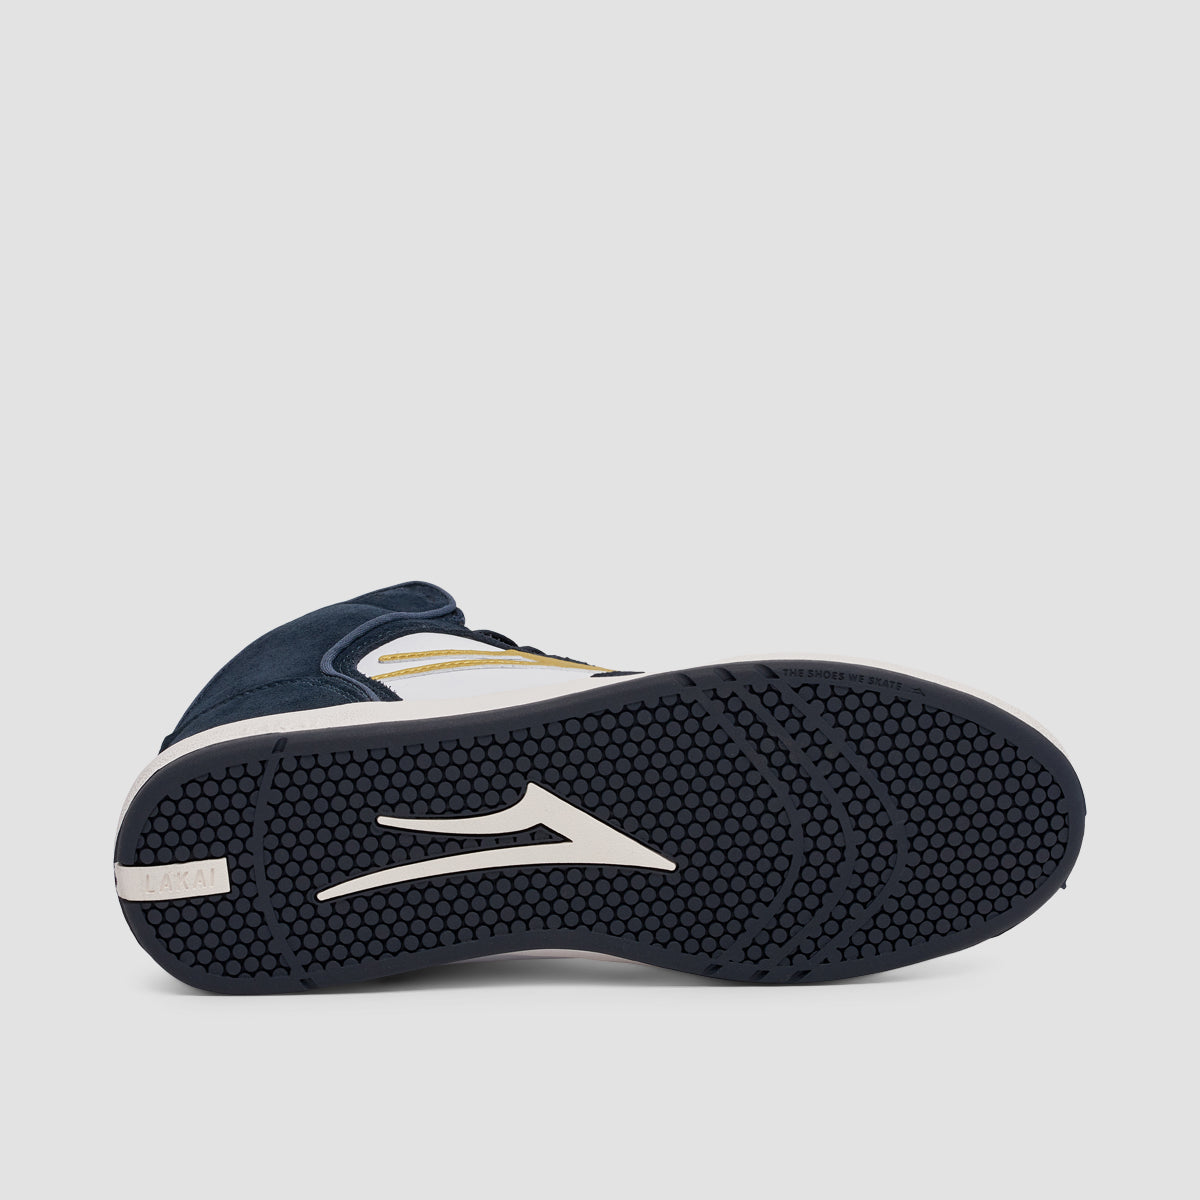 Lakai Telford Shoes - Navy/White Suede